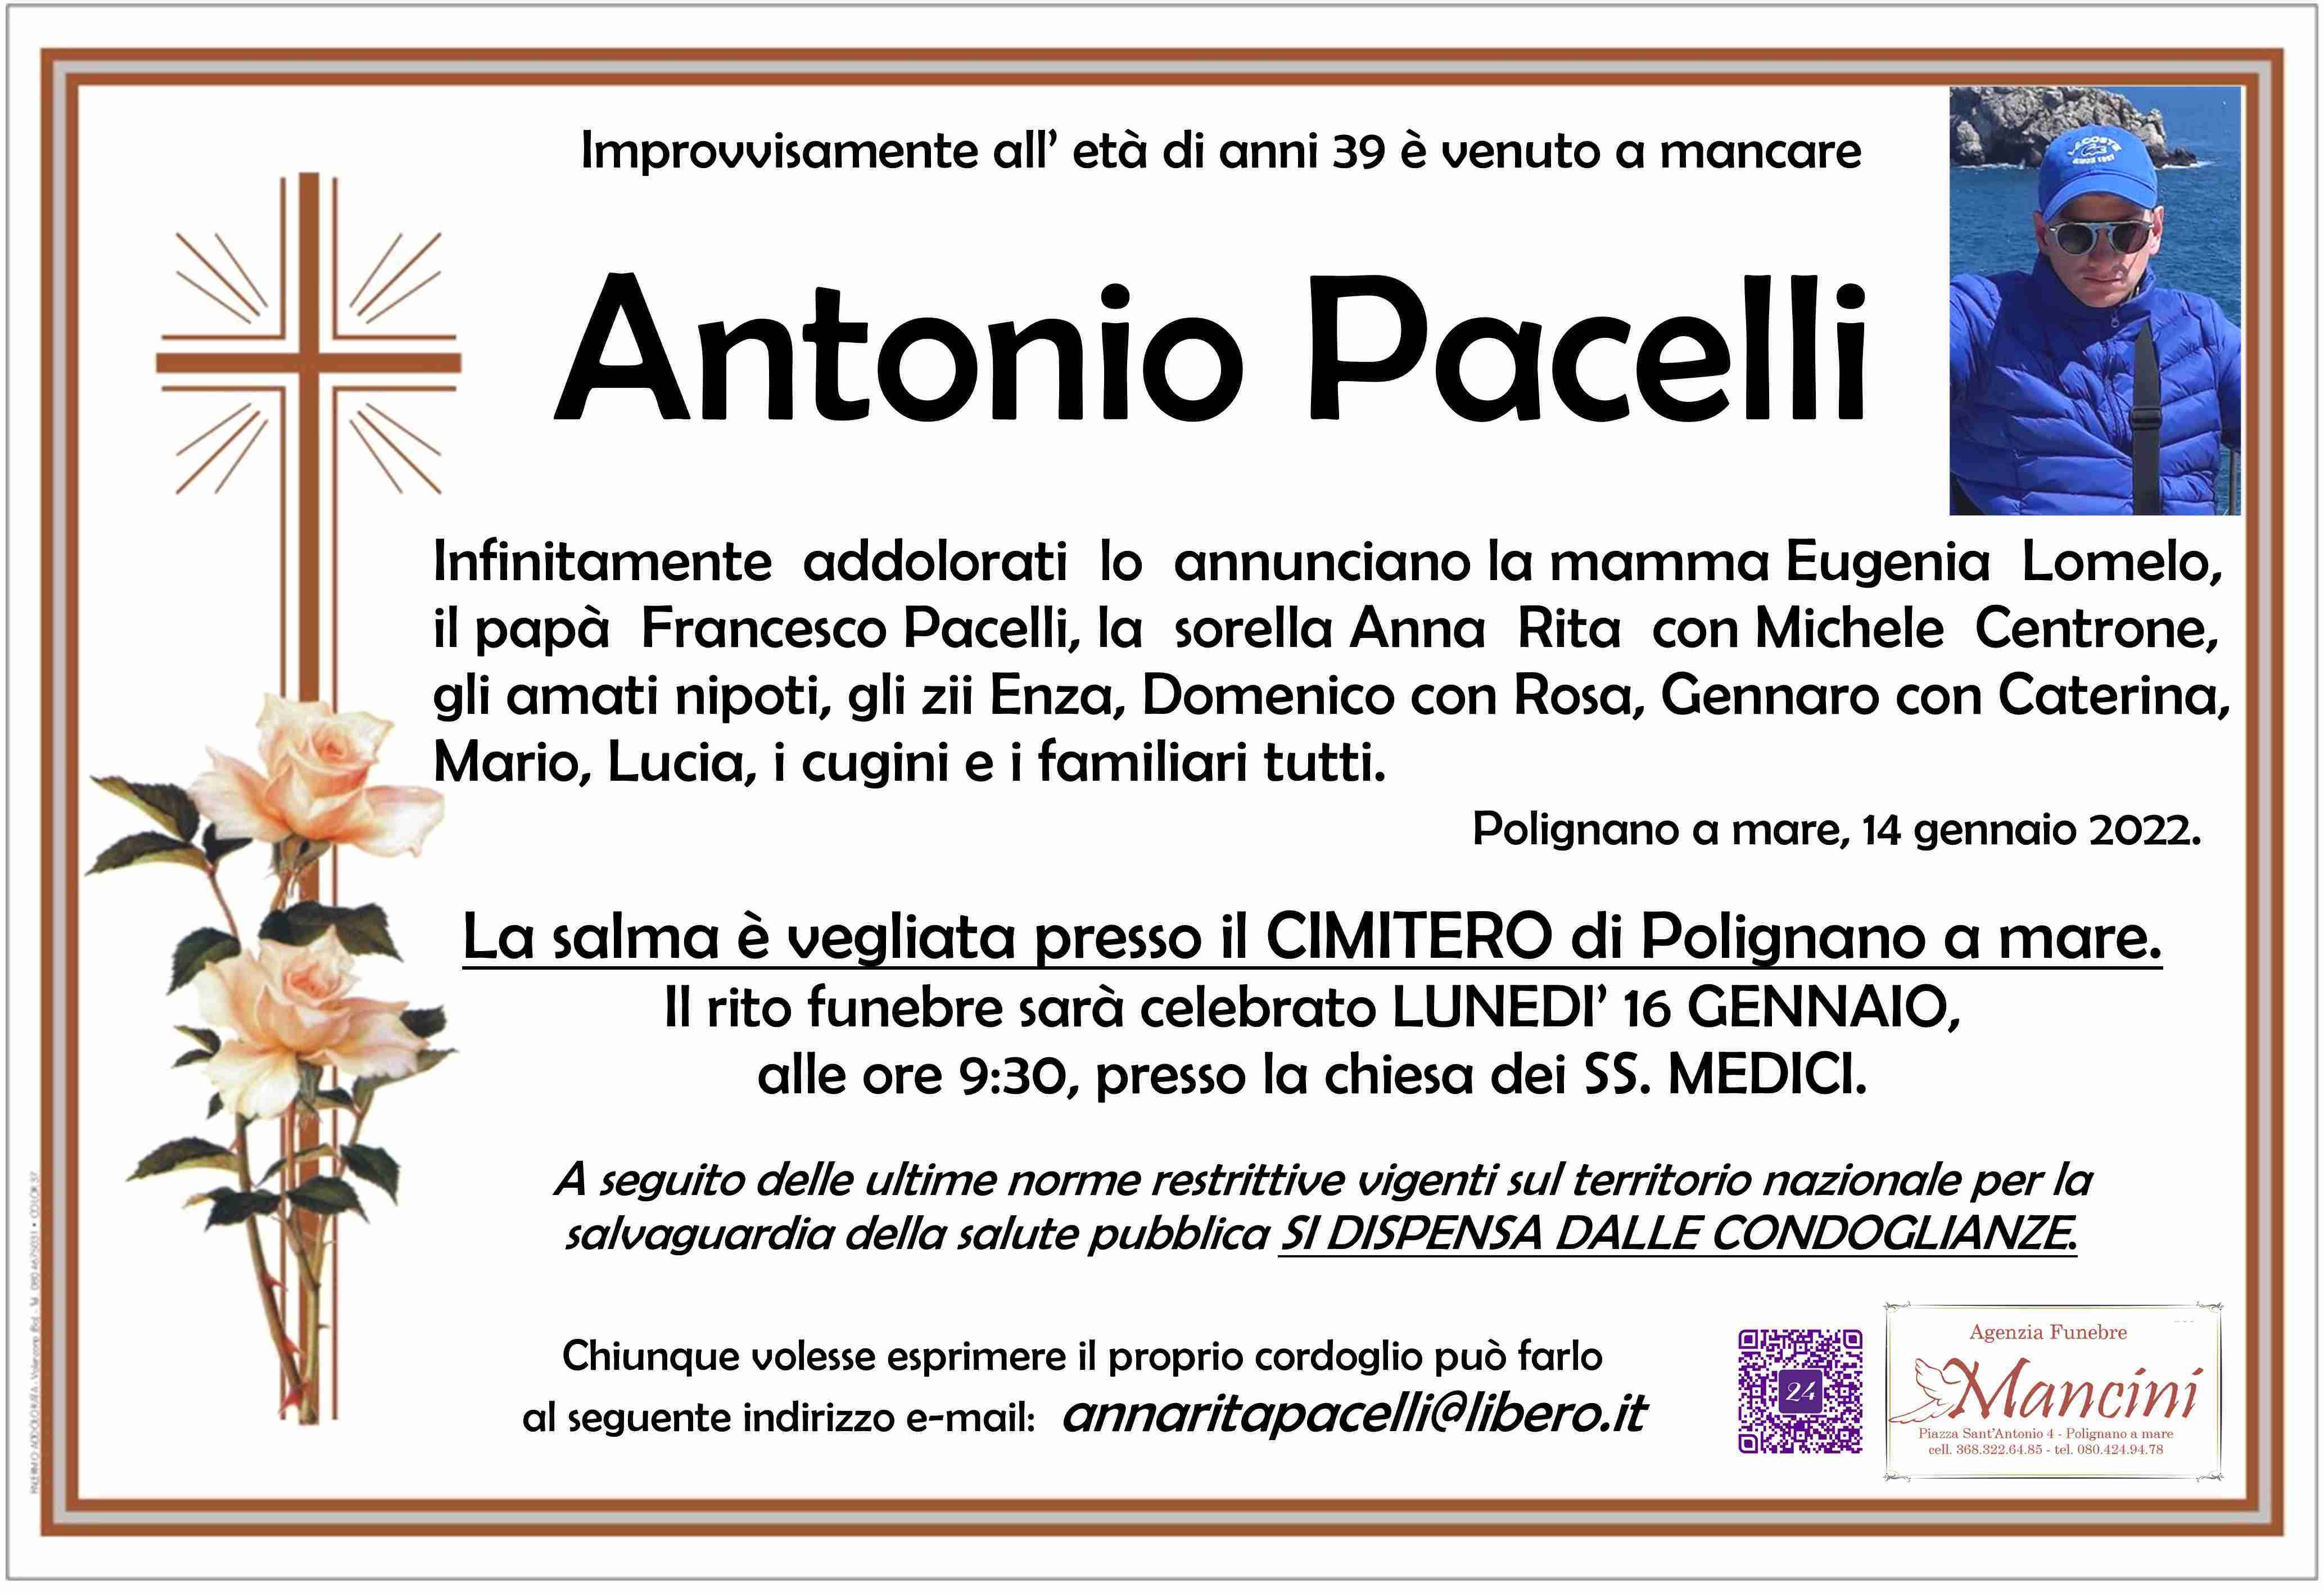 Antonio Pacelli